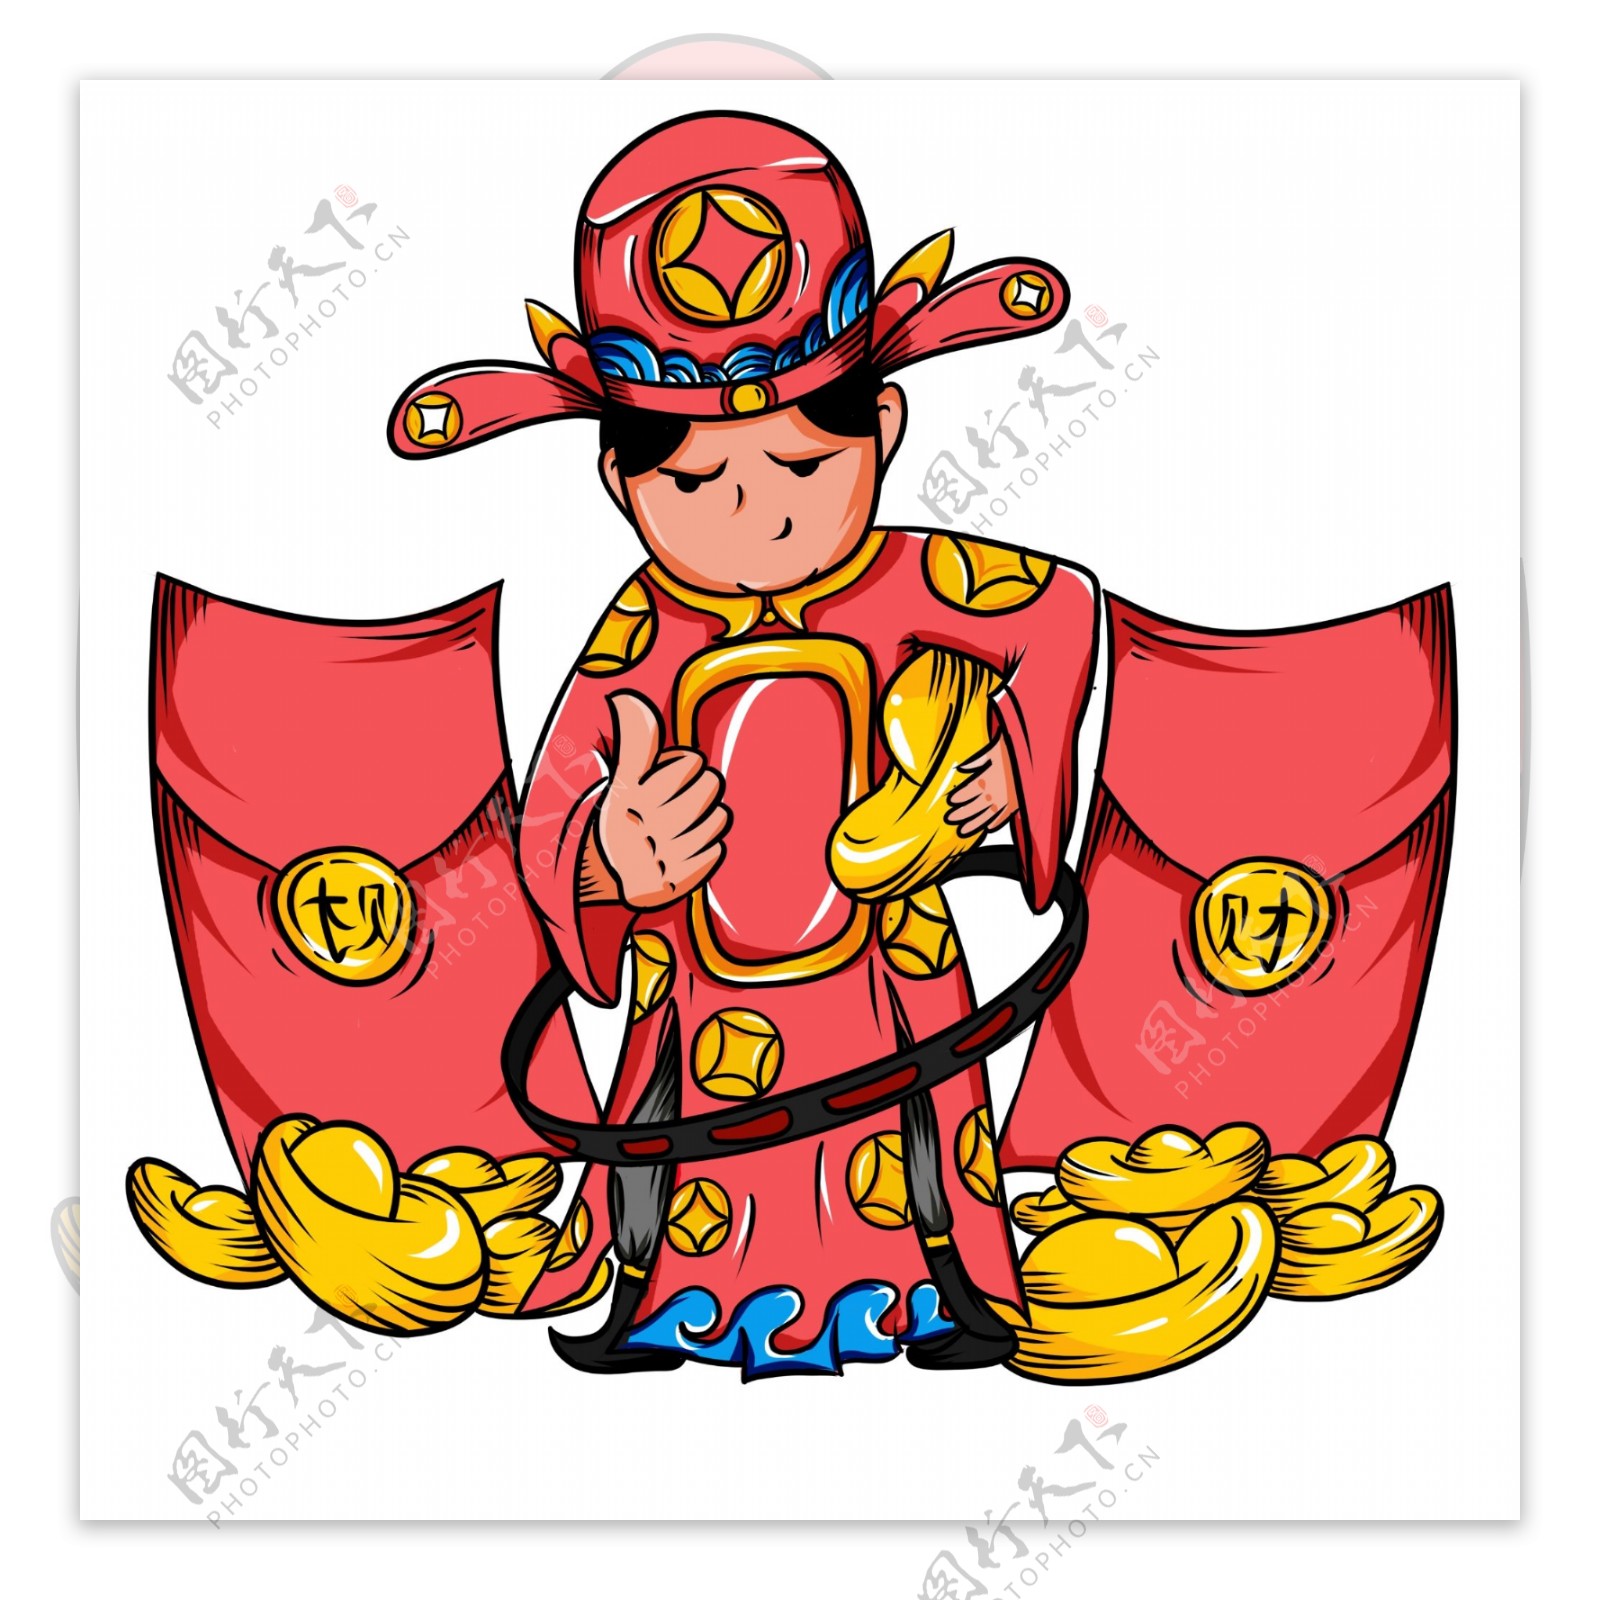 中国风手绘红包财神爷